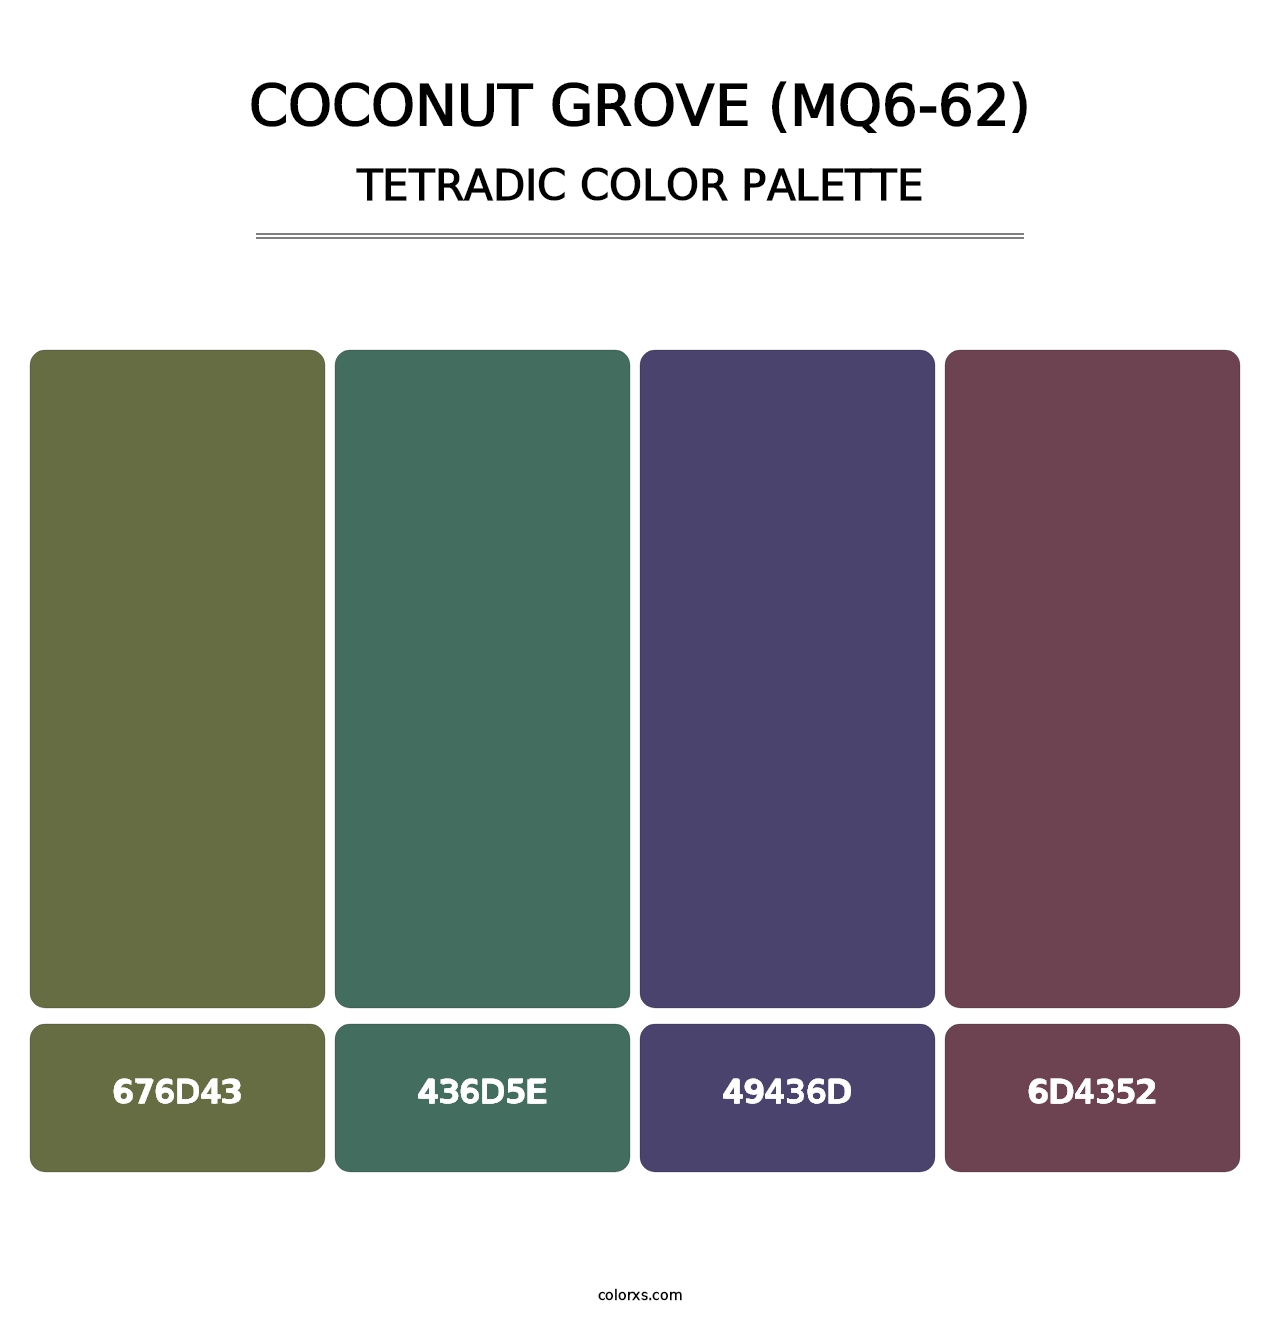 Coconut Grove (MQ6-62) - Tetradic Color Palette